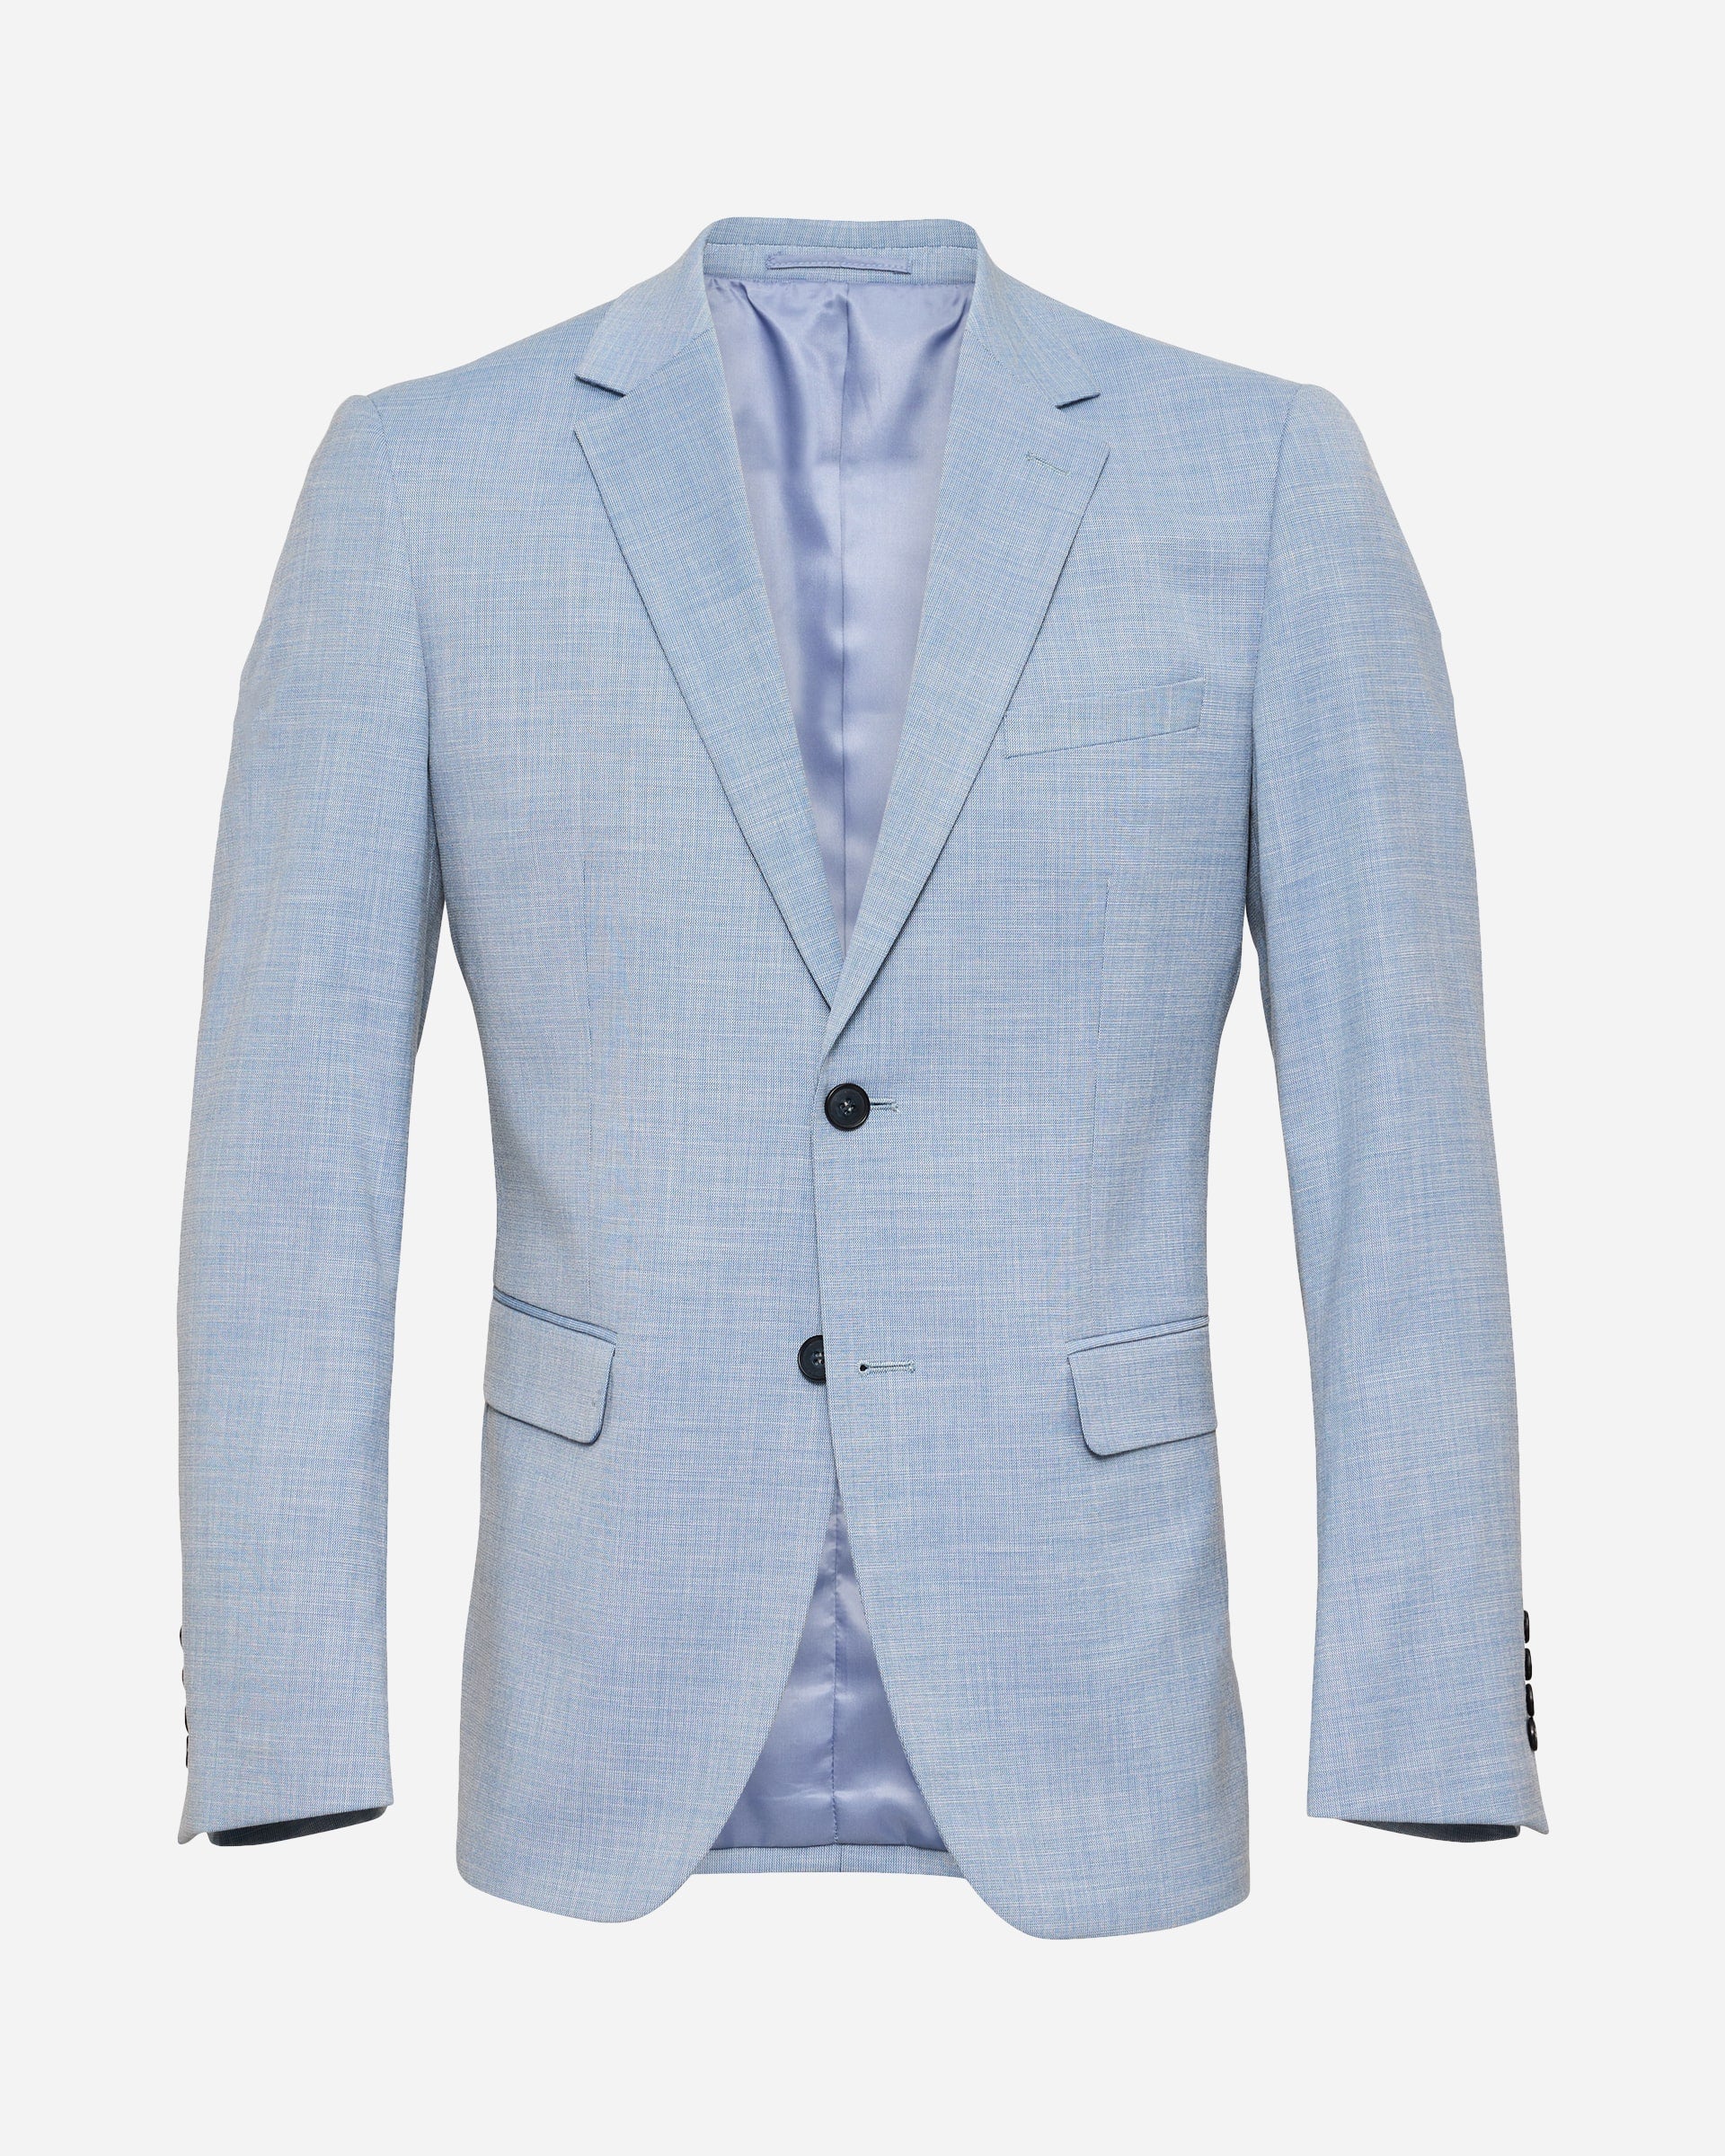 Corbell Blue Suit - Men's Suits at Menzclub